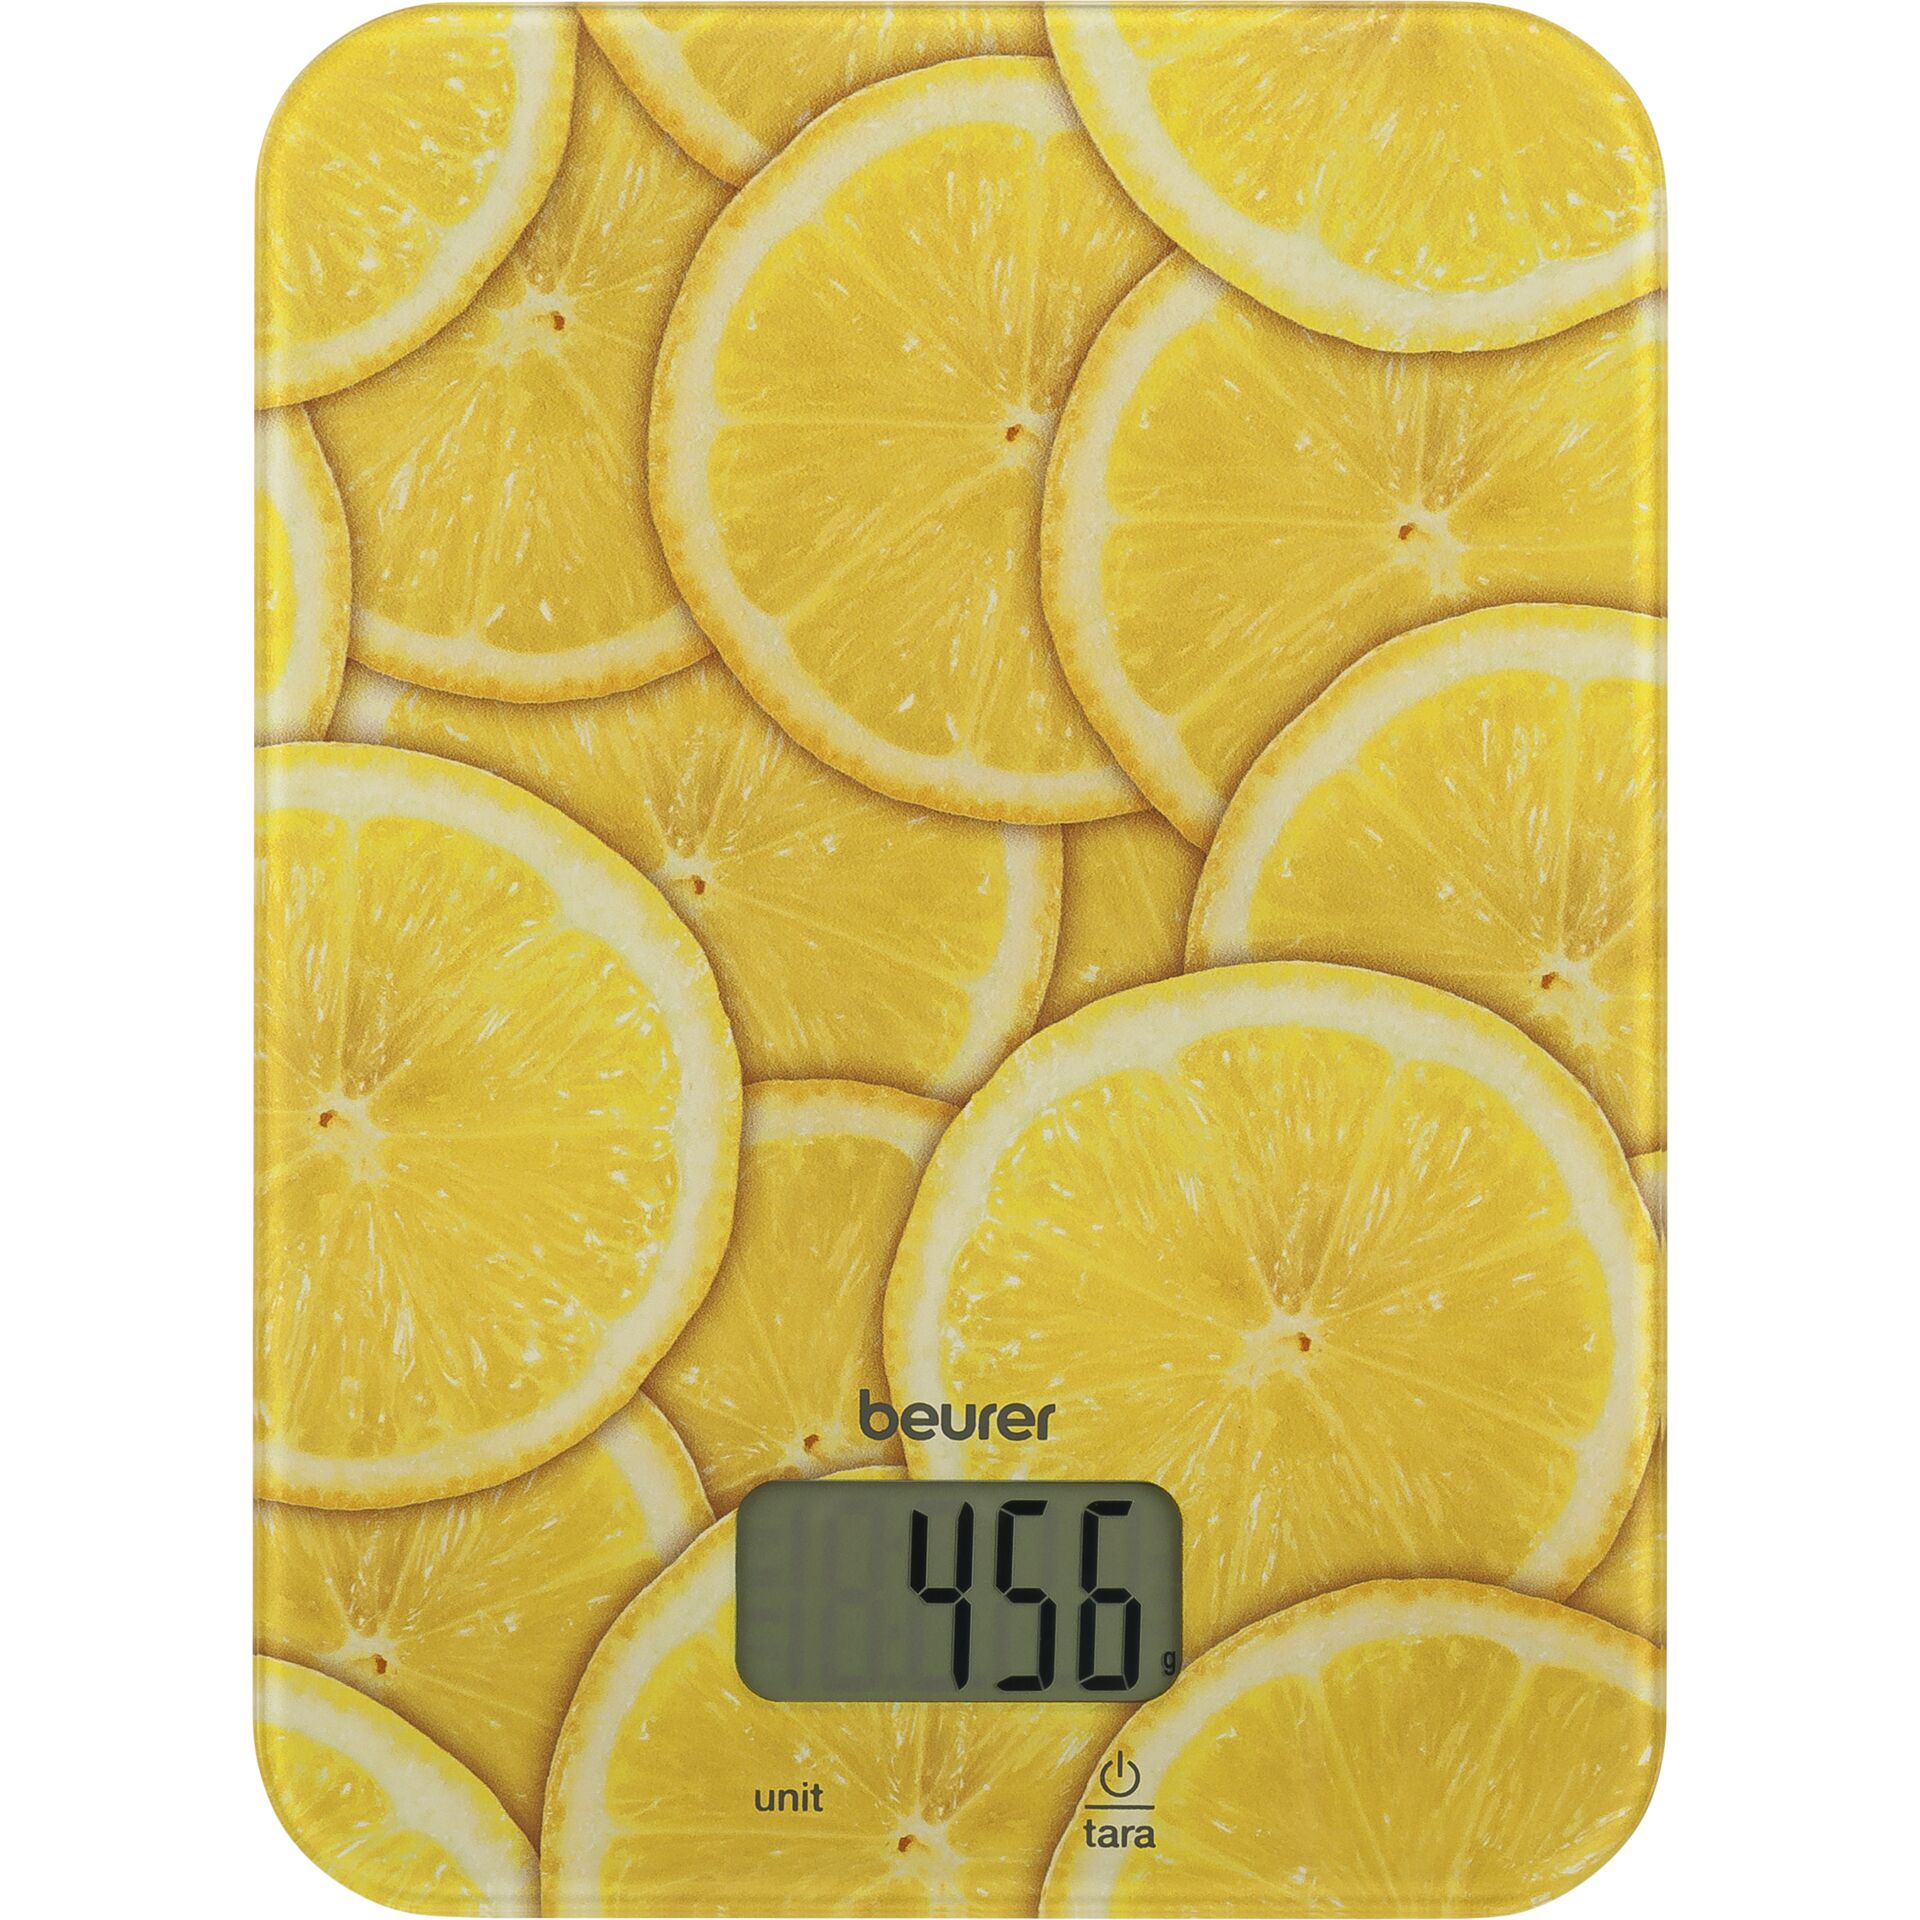 Beurer KS 19 Lemon Elektronische Küchenwaage